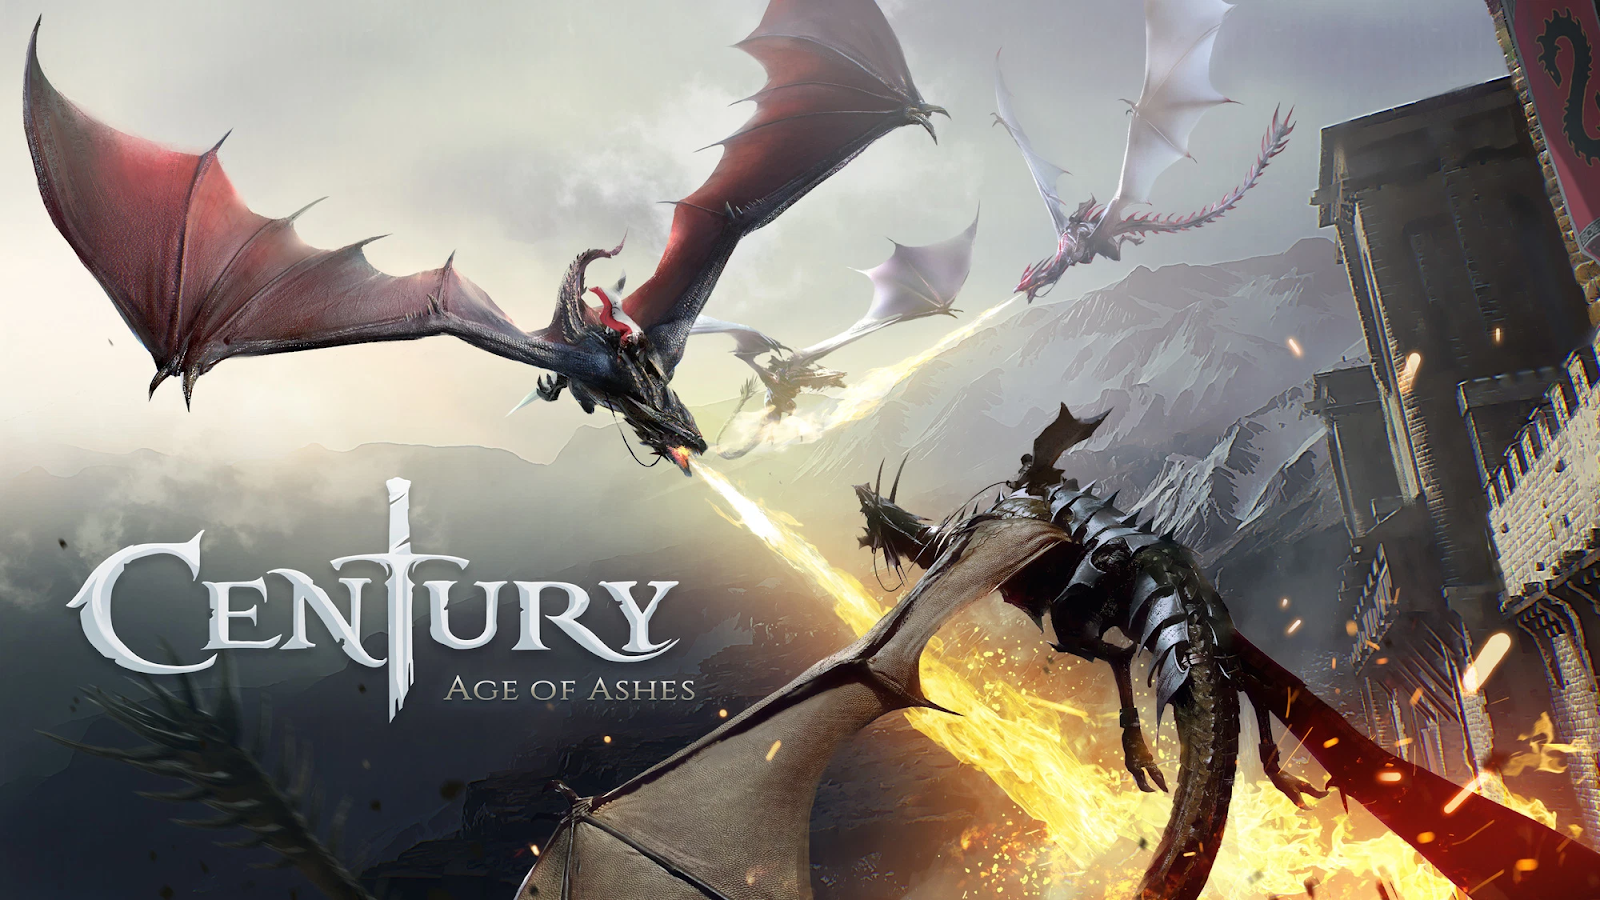 Tải về và trải nghiệm ngay Century: Age of Ashes - Game luyện rồng mới miễn phí trên Steam  